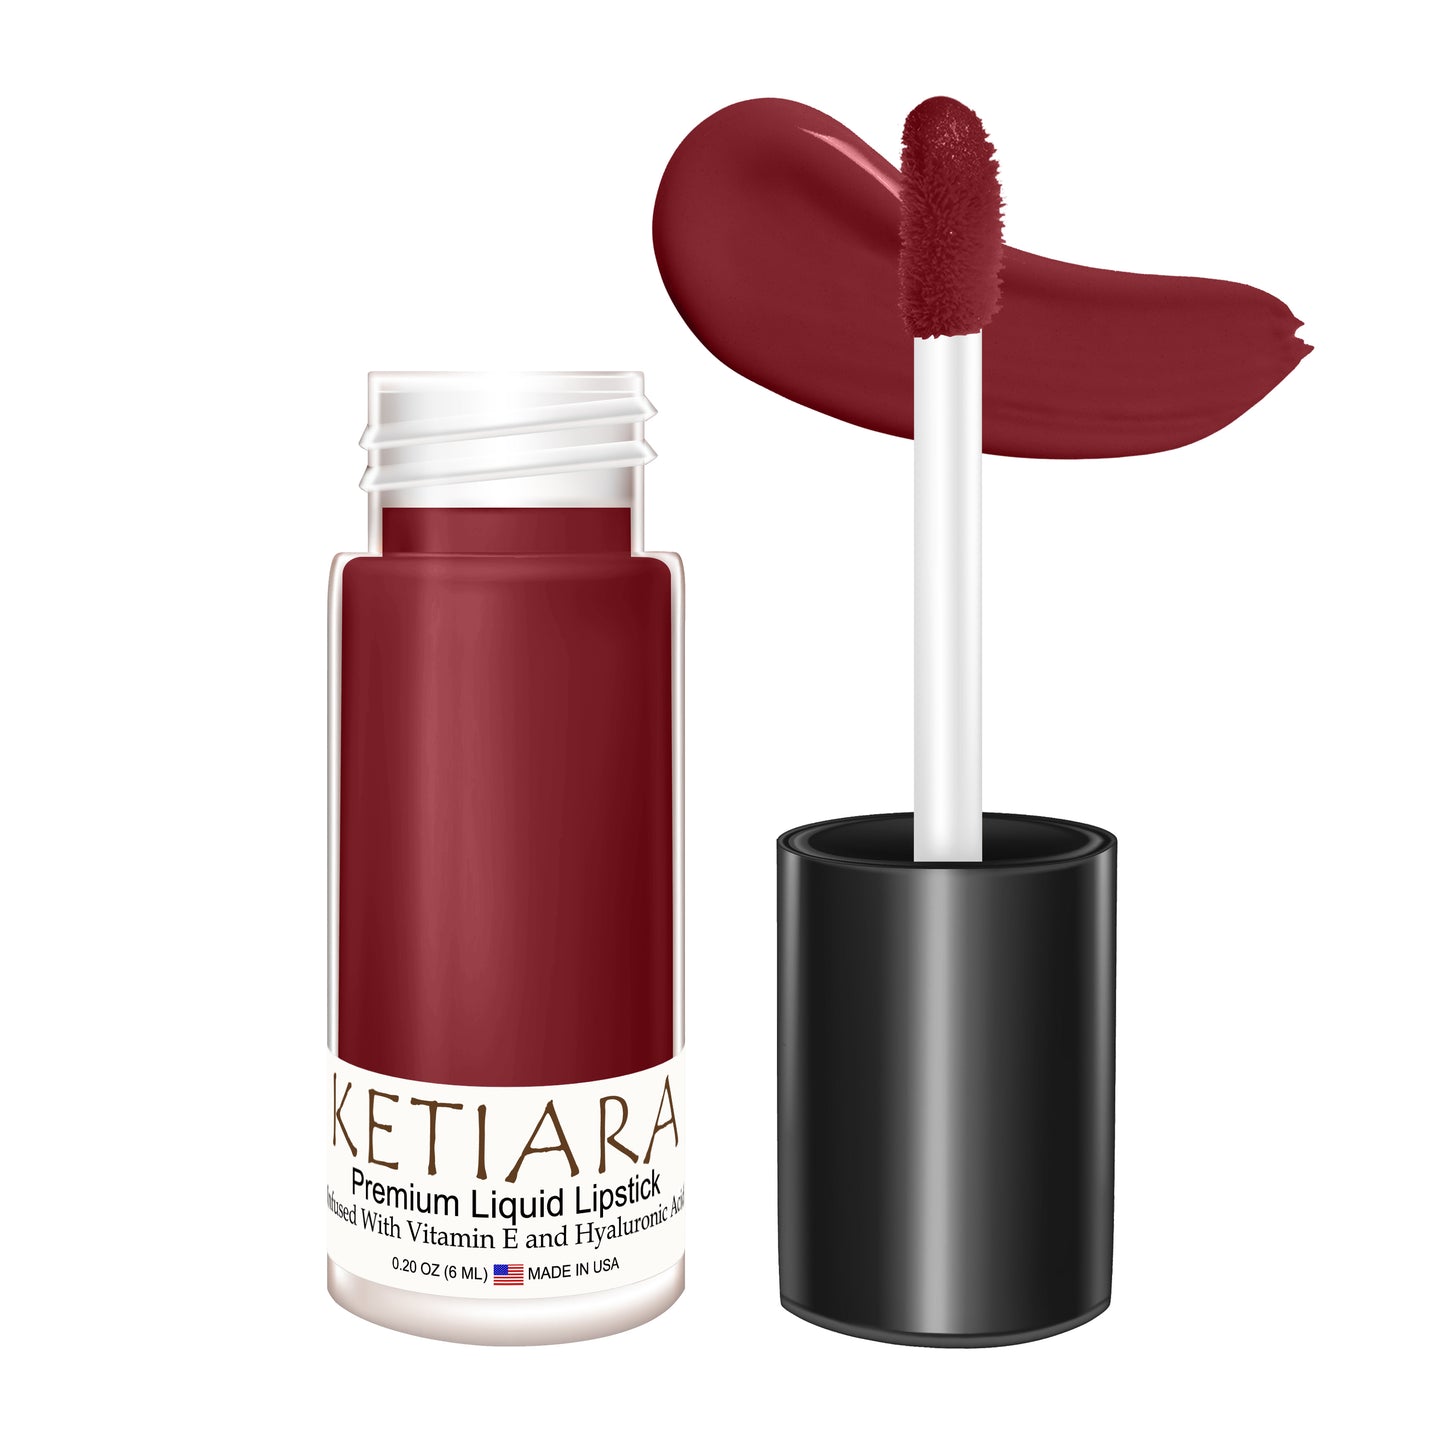 Ketiara Premium Full Coverage Cactus Flower Liquid Lipstick Infused With Hyaluronic Acid, 6 ml